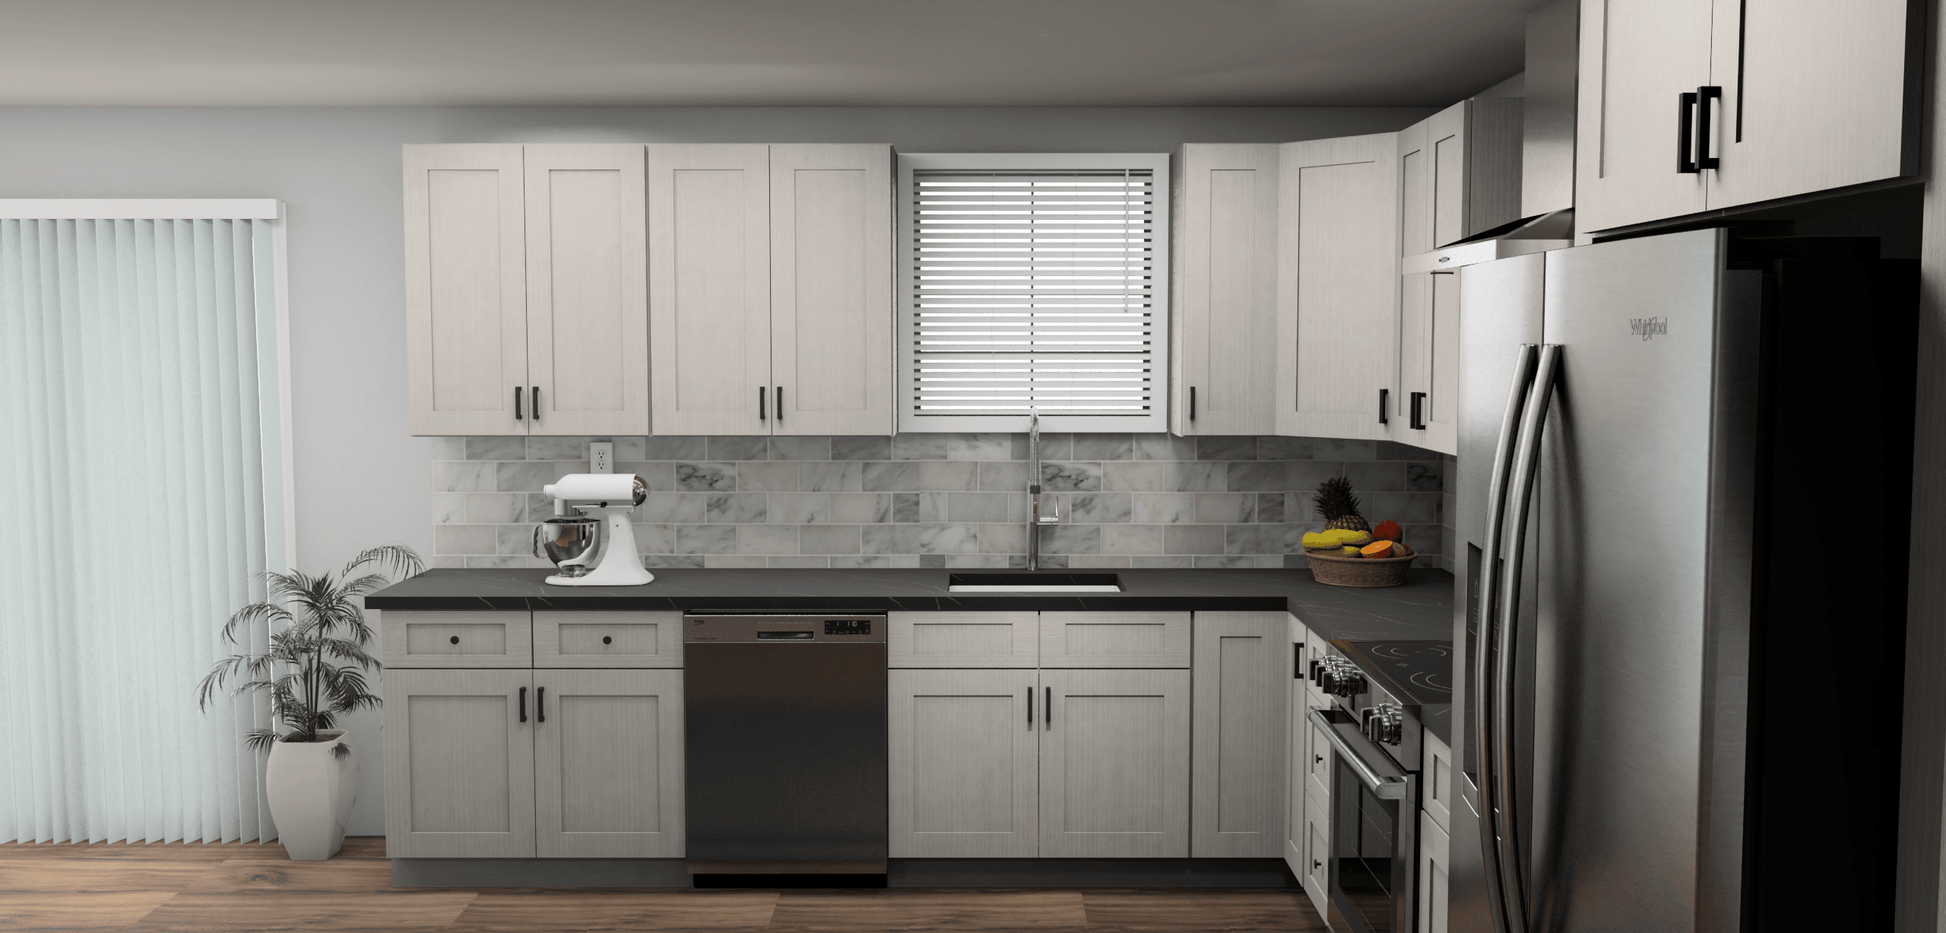 Fabuwood Allure Galaxy Horizon 11 x 13 L Shaped Kitchen Side Layout Photo